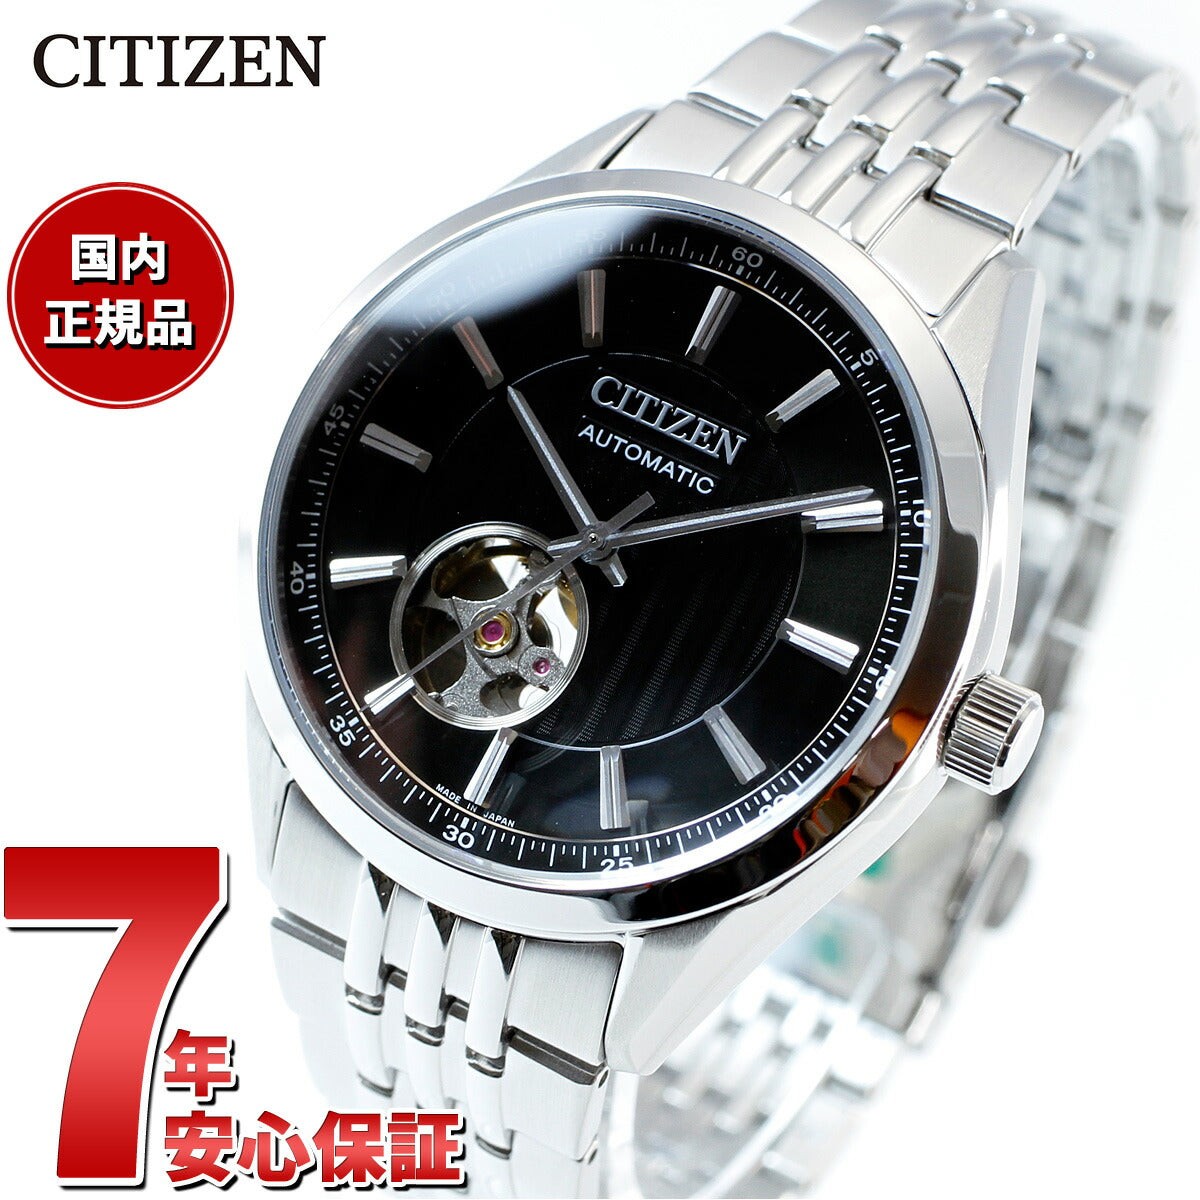 シチズンコレクション CITIZEN COLLECTION メカニカル 自動巻き 機械式 腕時計 メンズ NH9110-90E クラシックオープンハート